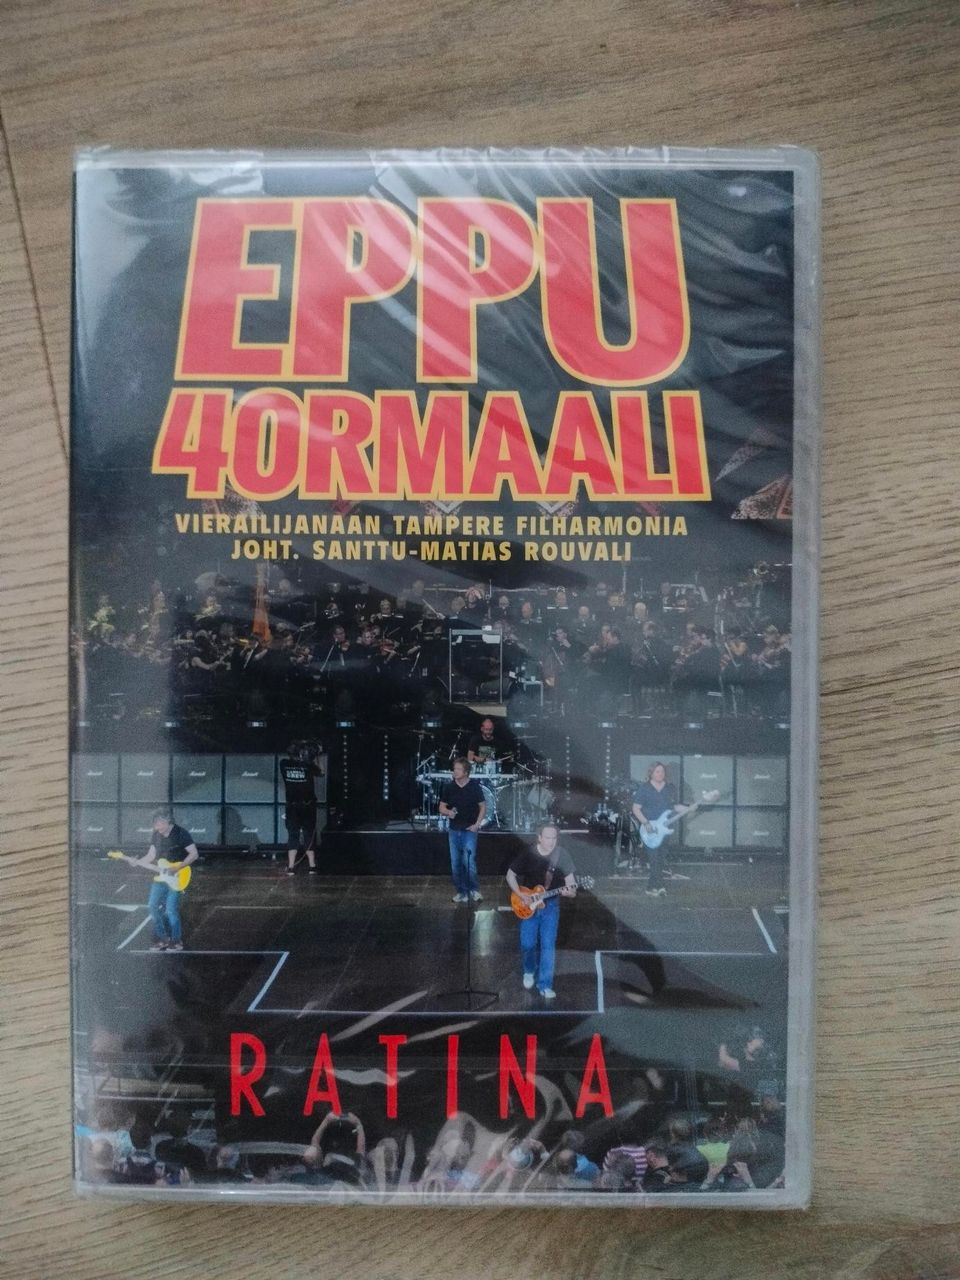 Eppu Normaali DVD.